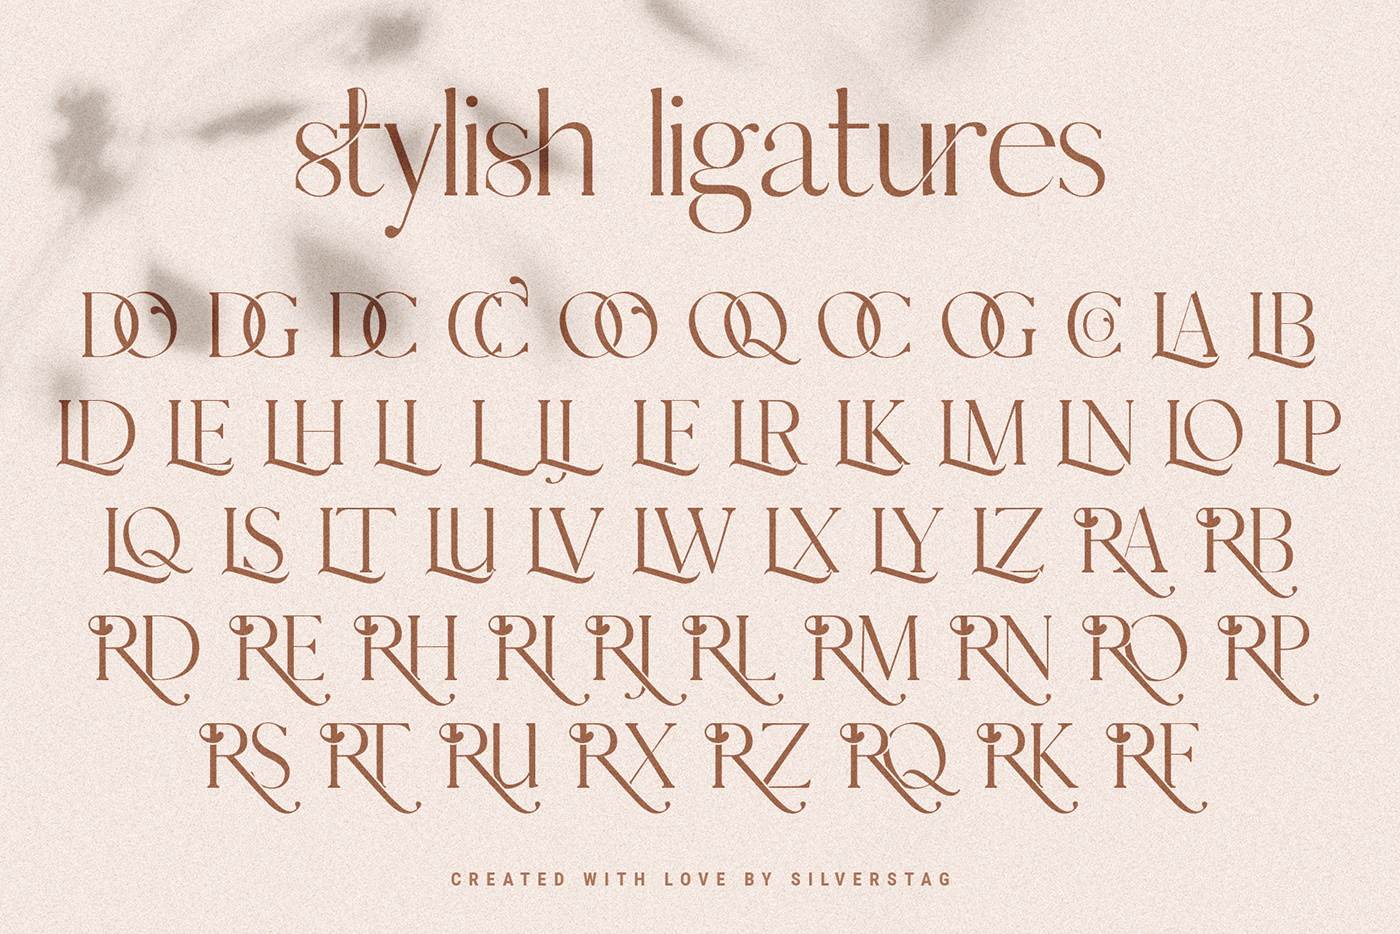 alternates creative elegant fashionable font ligature ligature font modern serif Serif Font